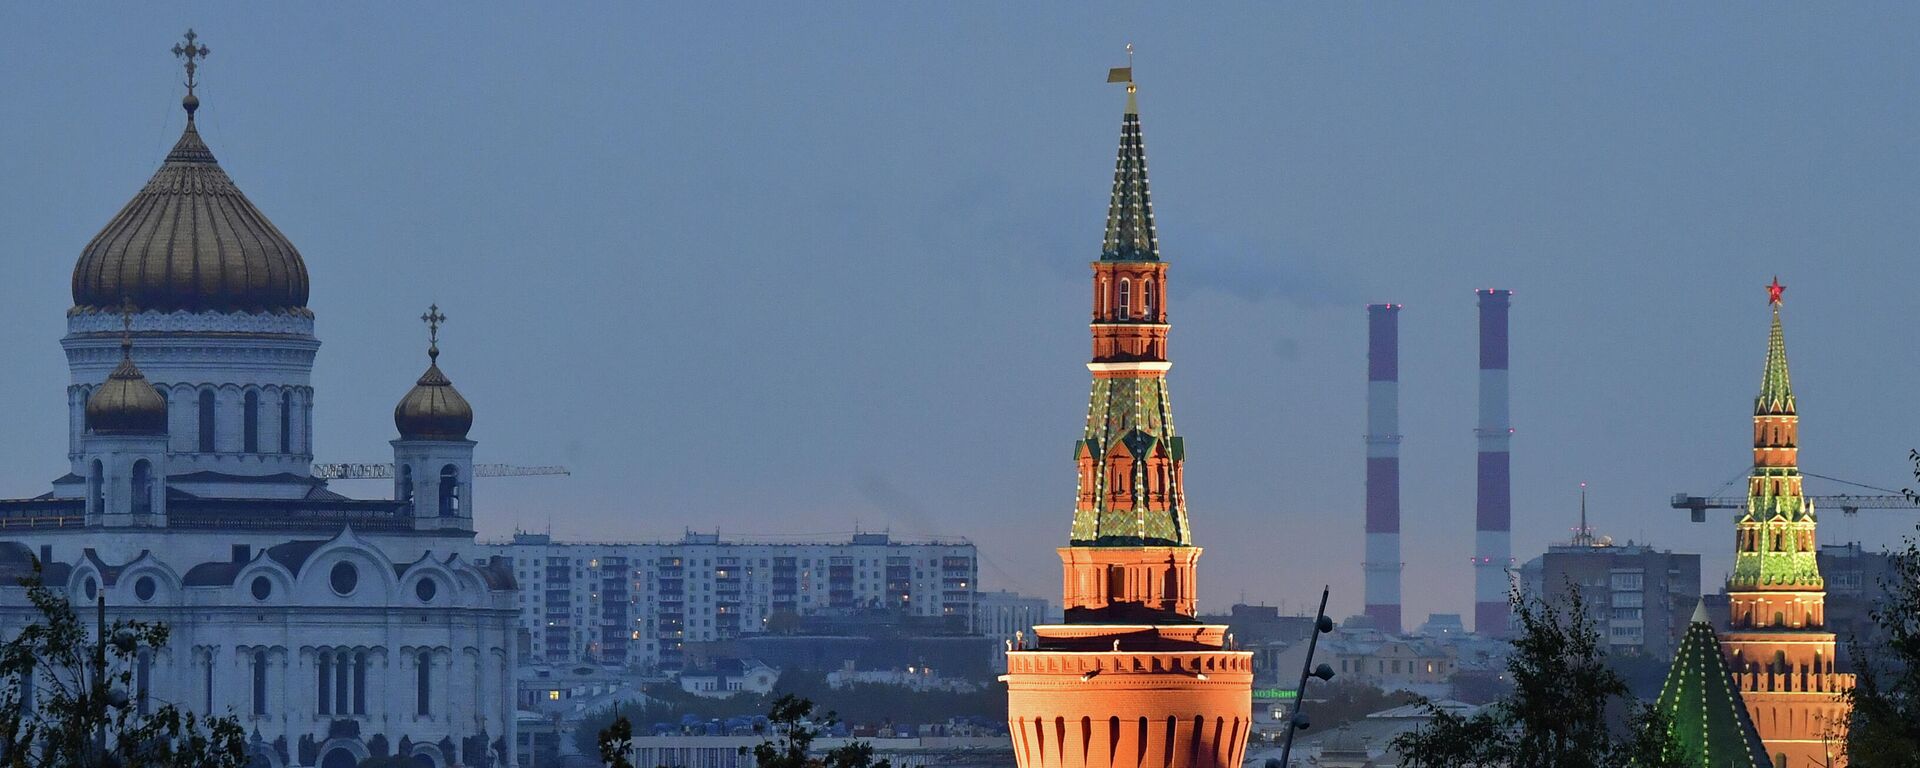 Башни Московского Кремля и храм Христа Спасителя, архивное фото - Sputnik Lietuva, 1920, 02.12.2021